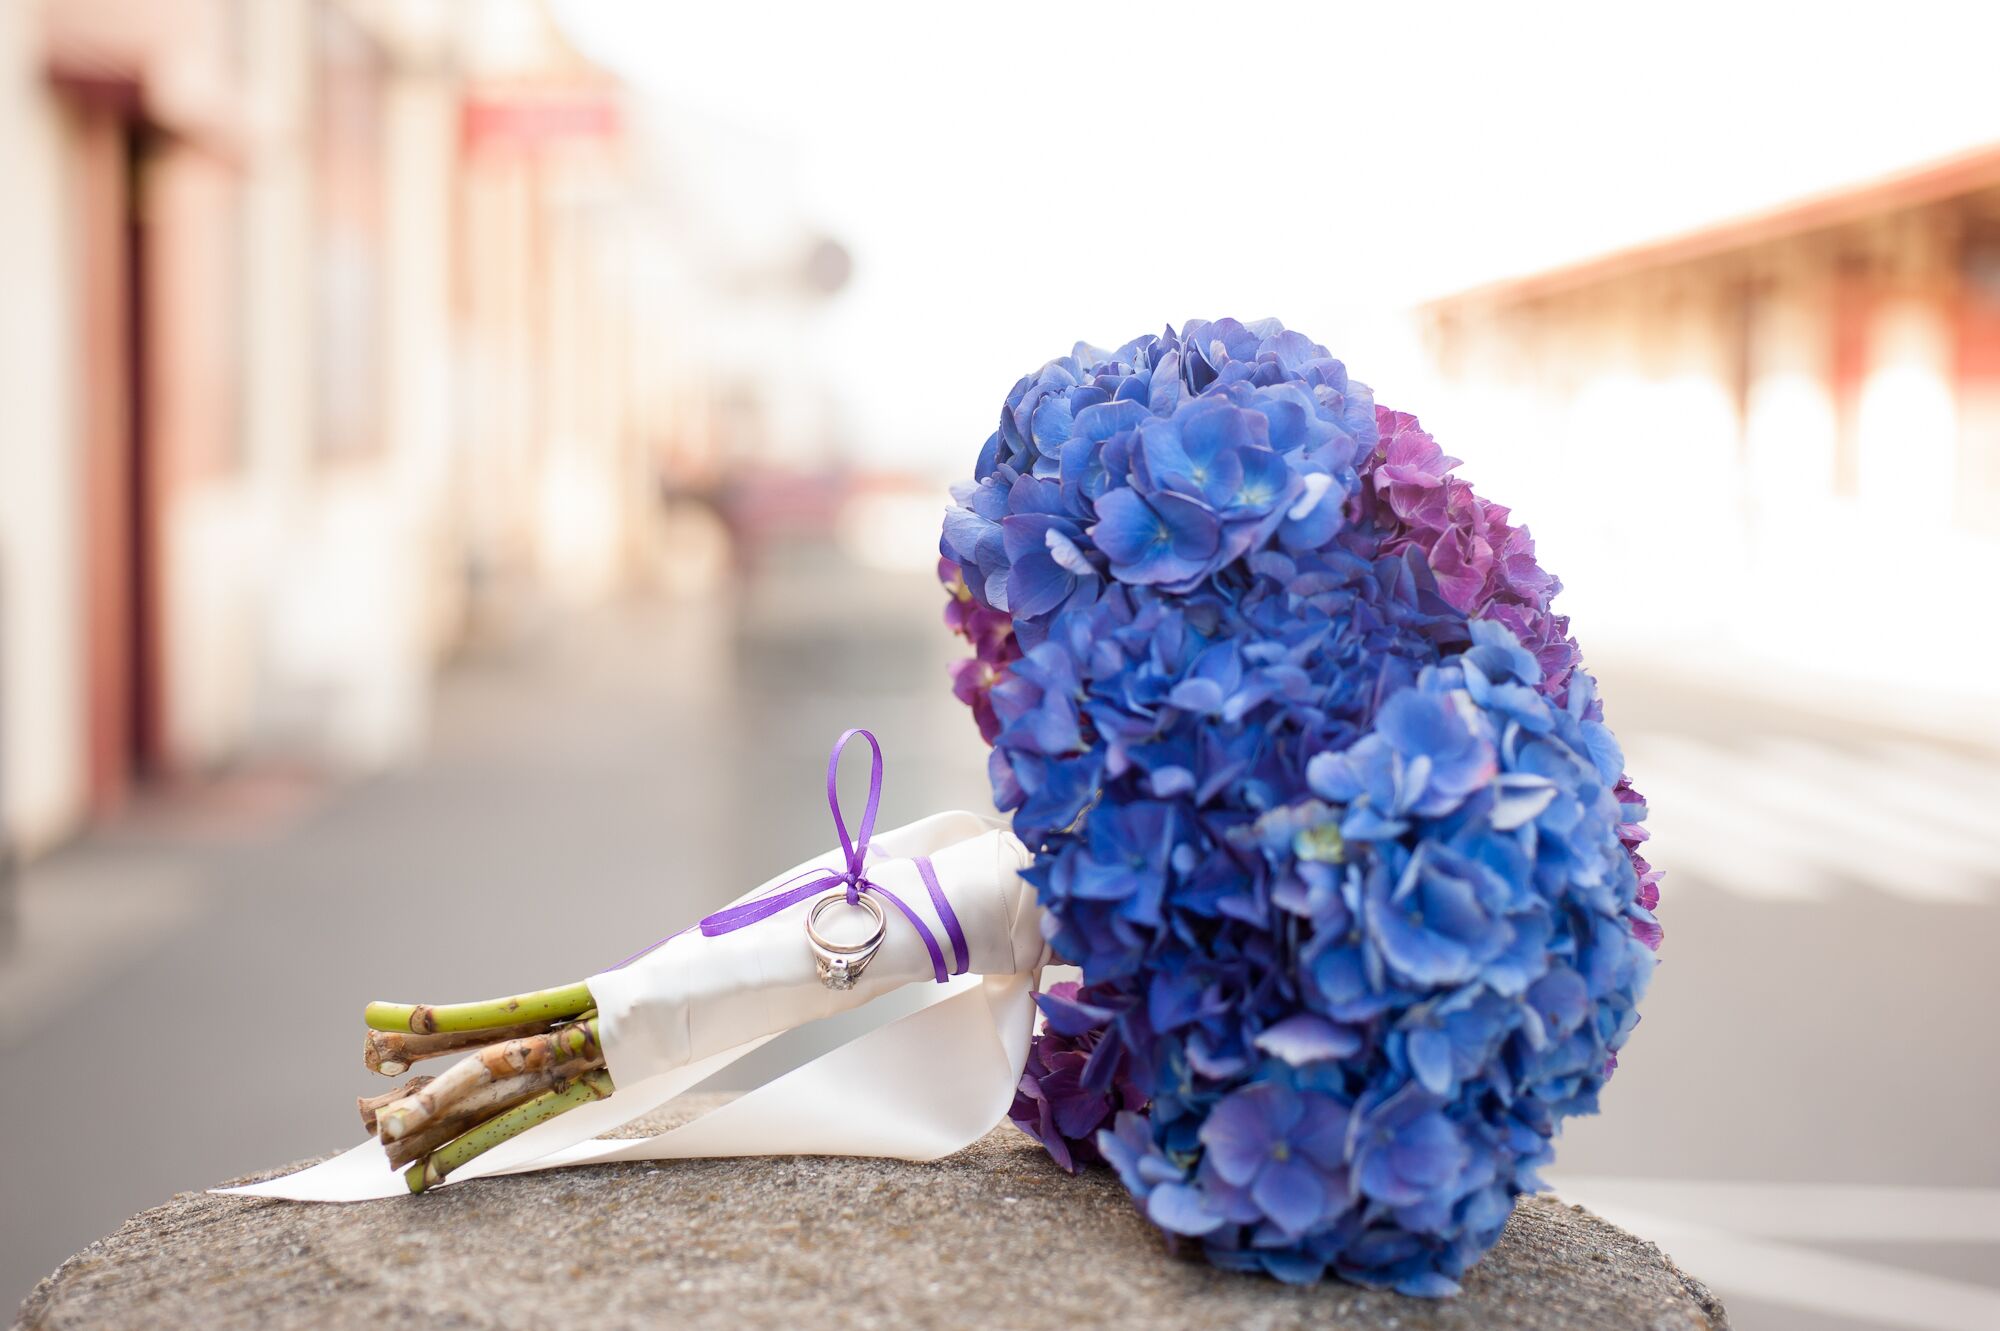 purple hydrangea bouquet